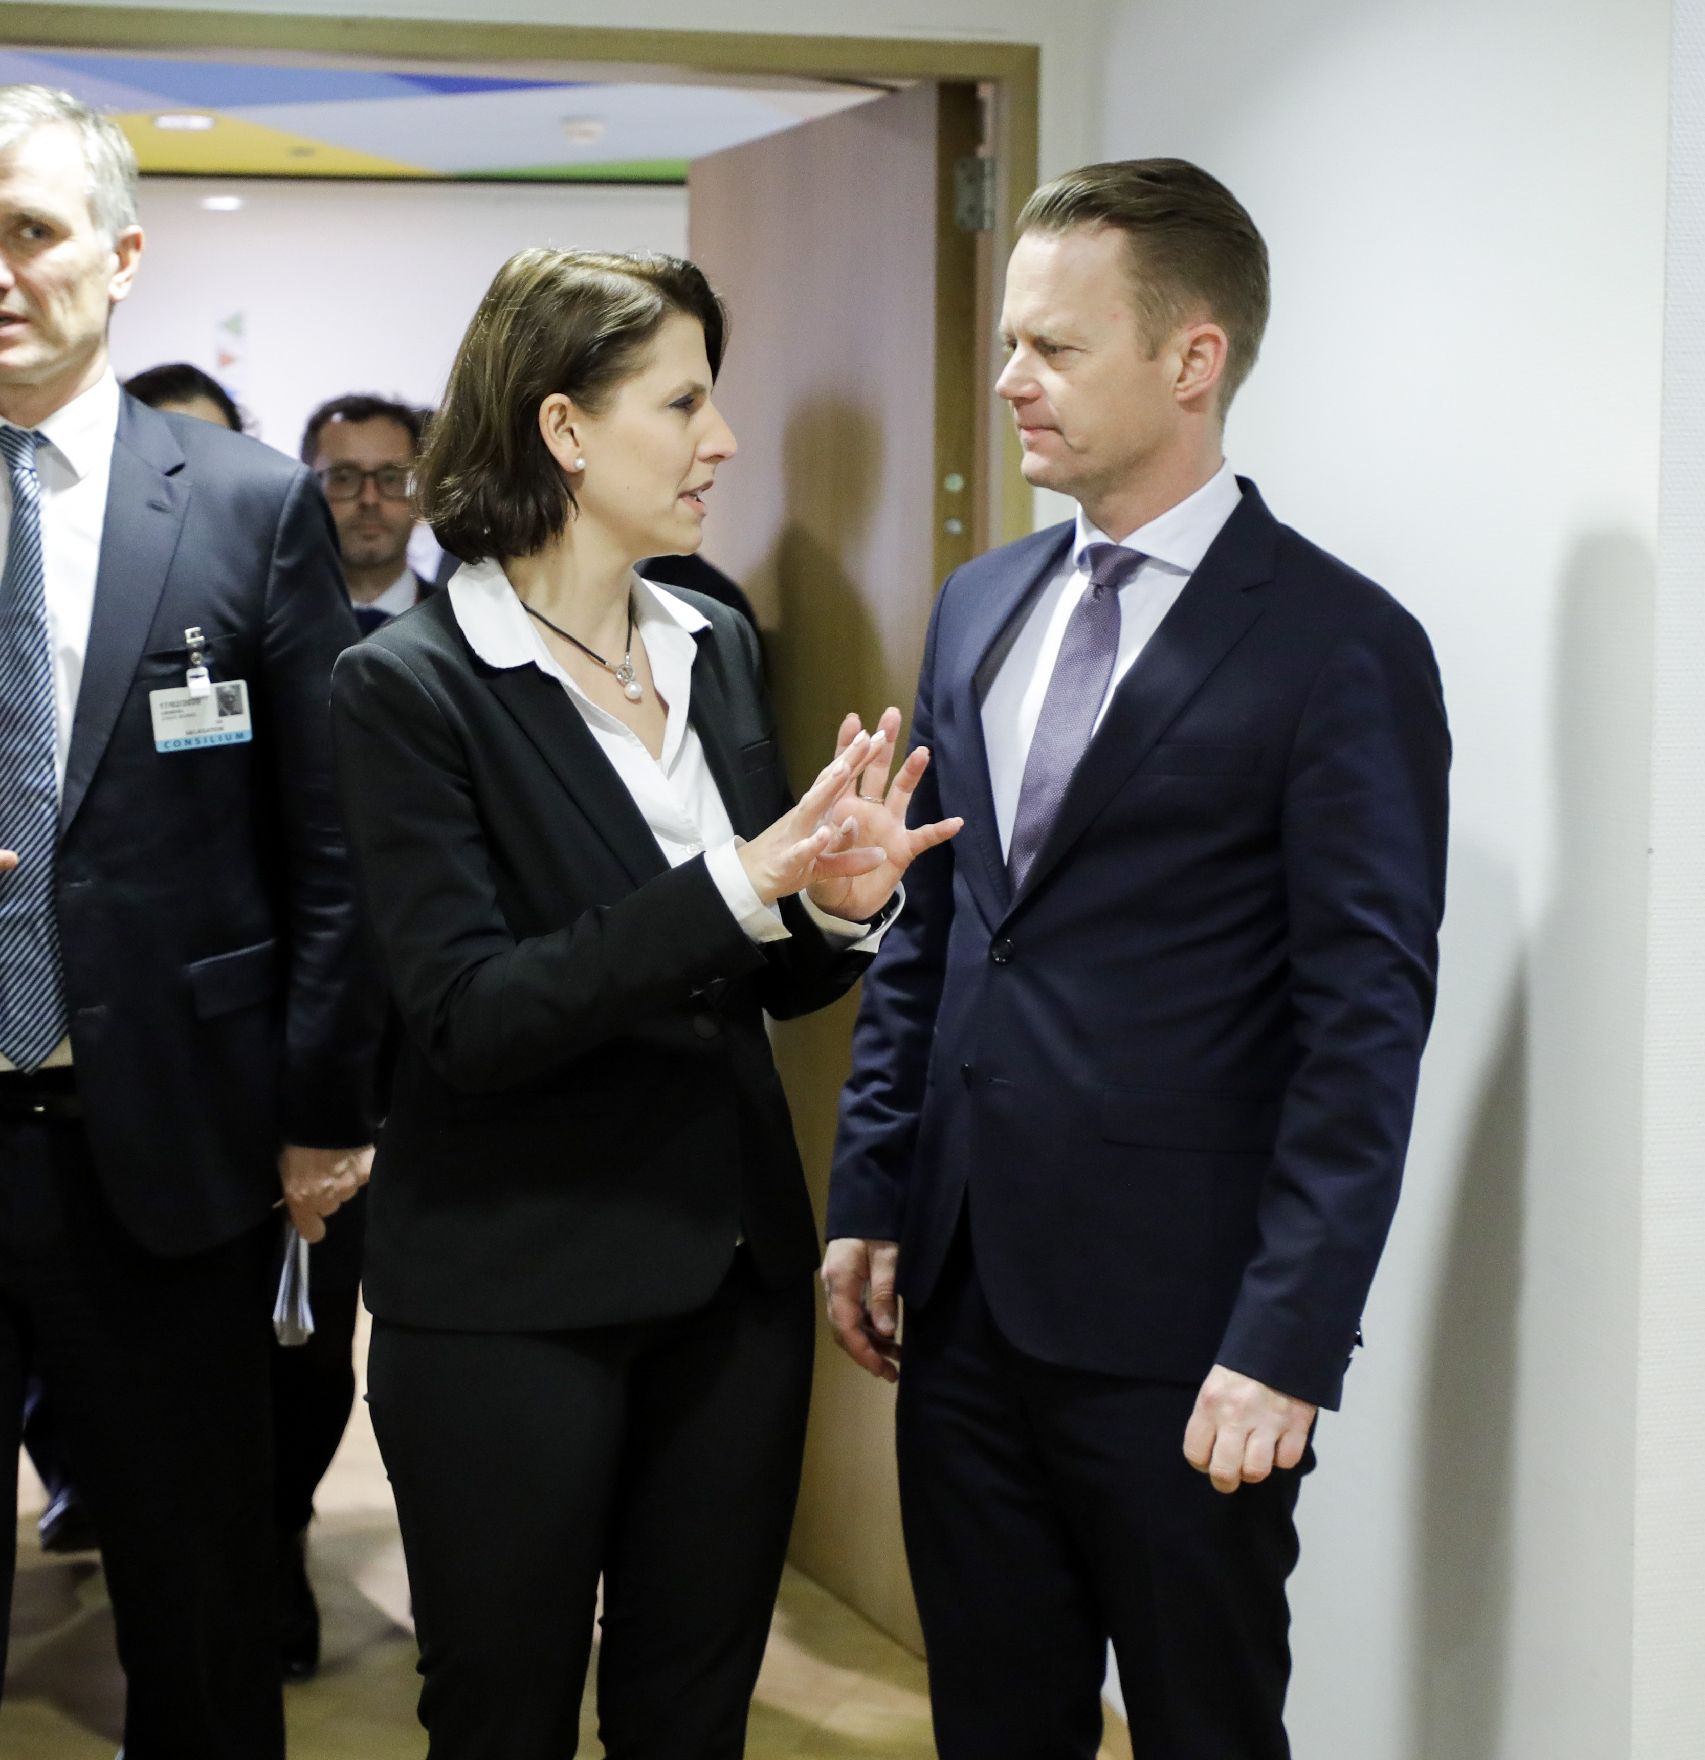 Am 17. Februar 2020 nahm Bundesministerin Karoline Edtstadler (l.) am Rat für Allgemeine Angelegenheiten in Brüssel teil. Im Bild mit dem dänischen Minister Jeppe Kofod (r.).